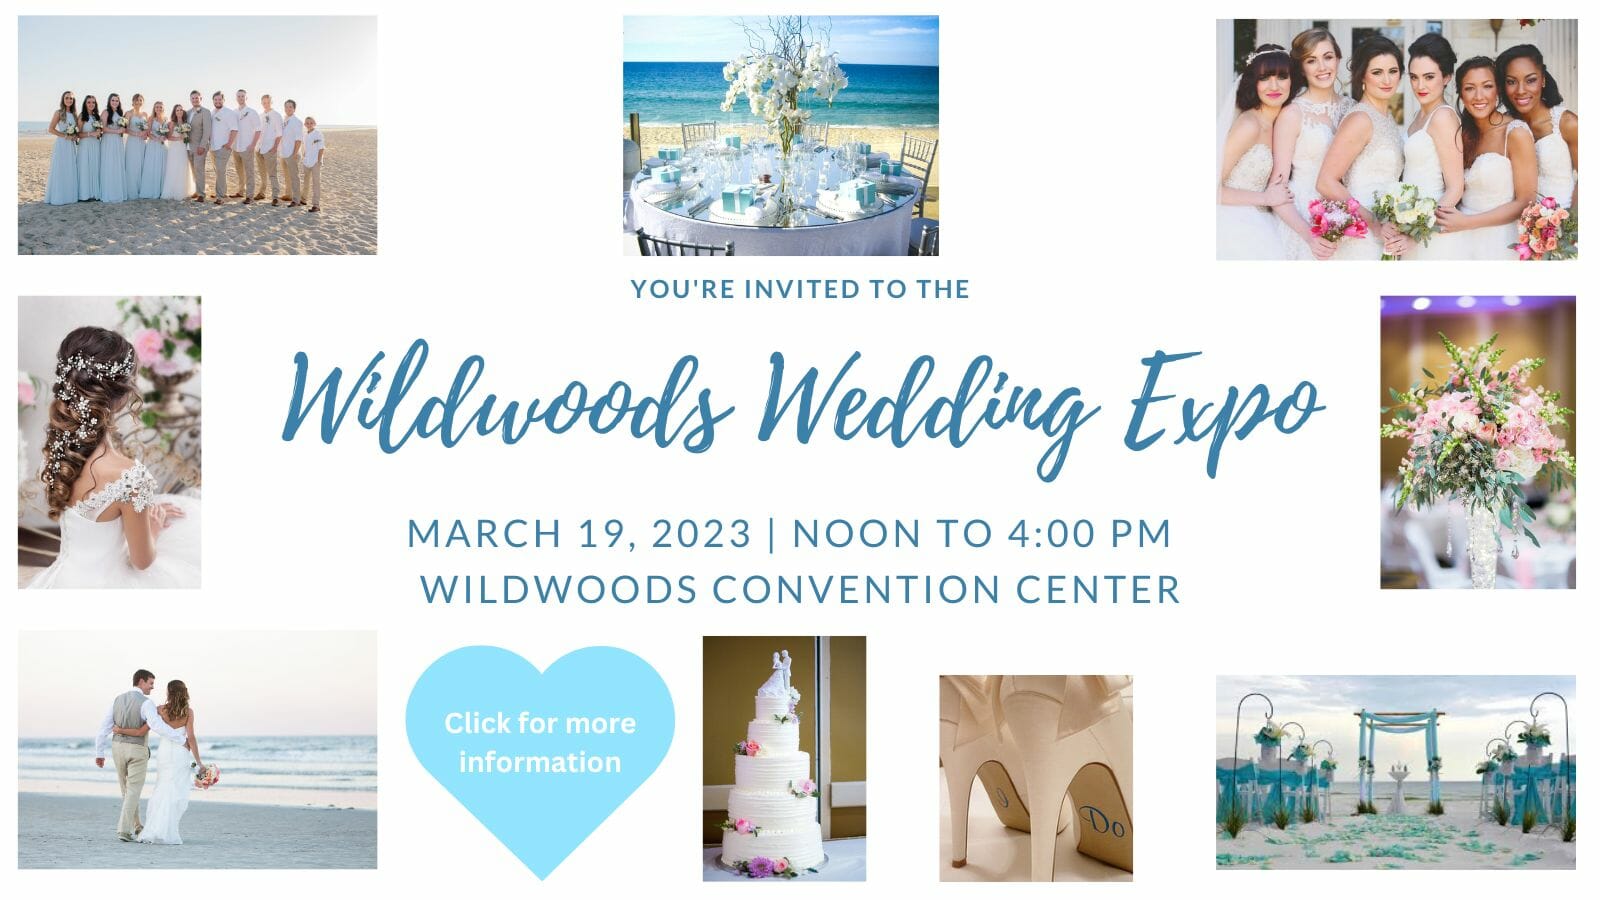 Wildwoods Wedding Expo 2023